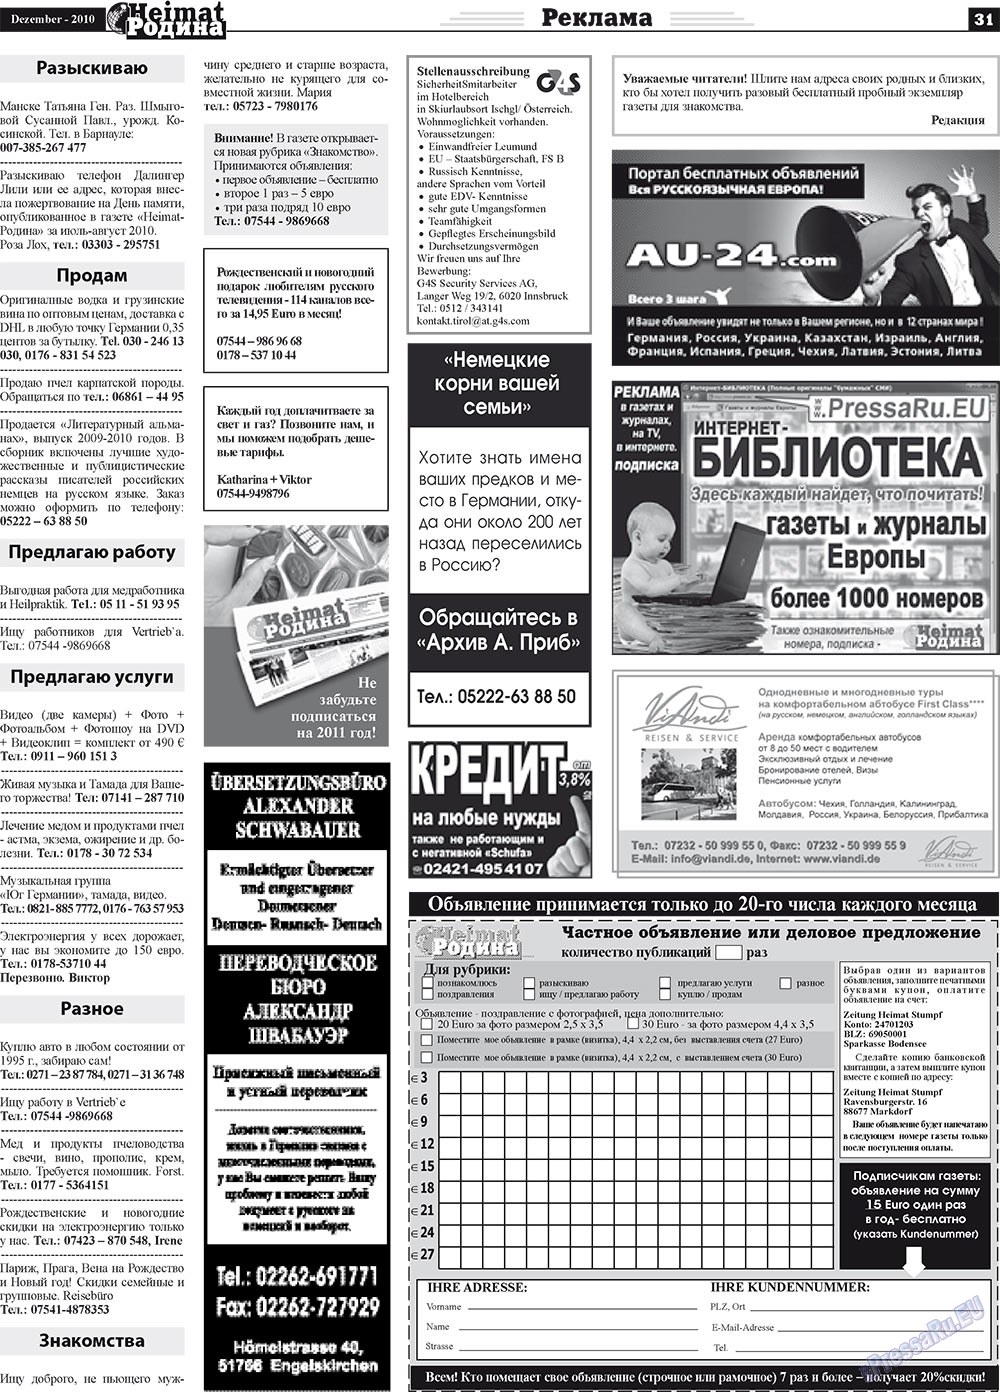 Heimat-Родина (газета). 2010 год, номер 12, стр. 31